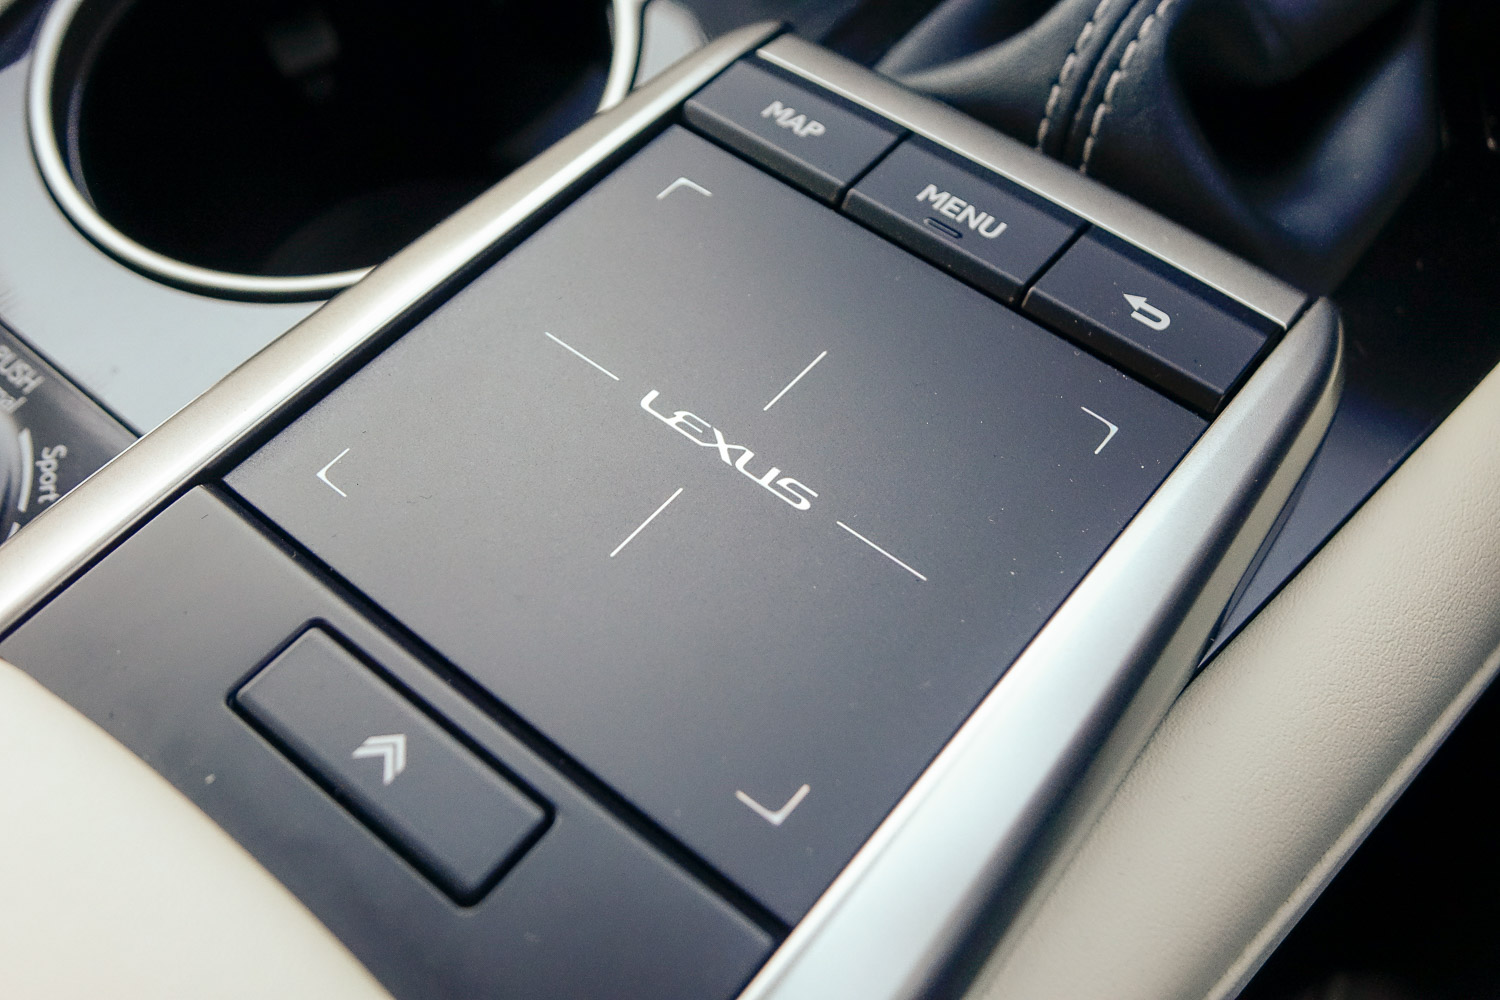 Lexus RX 450h (2020)